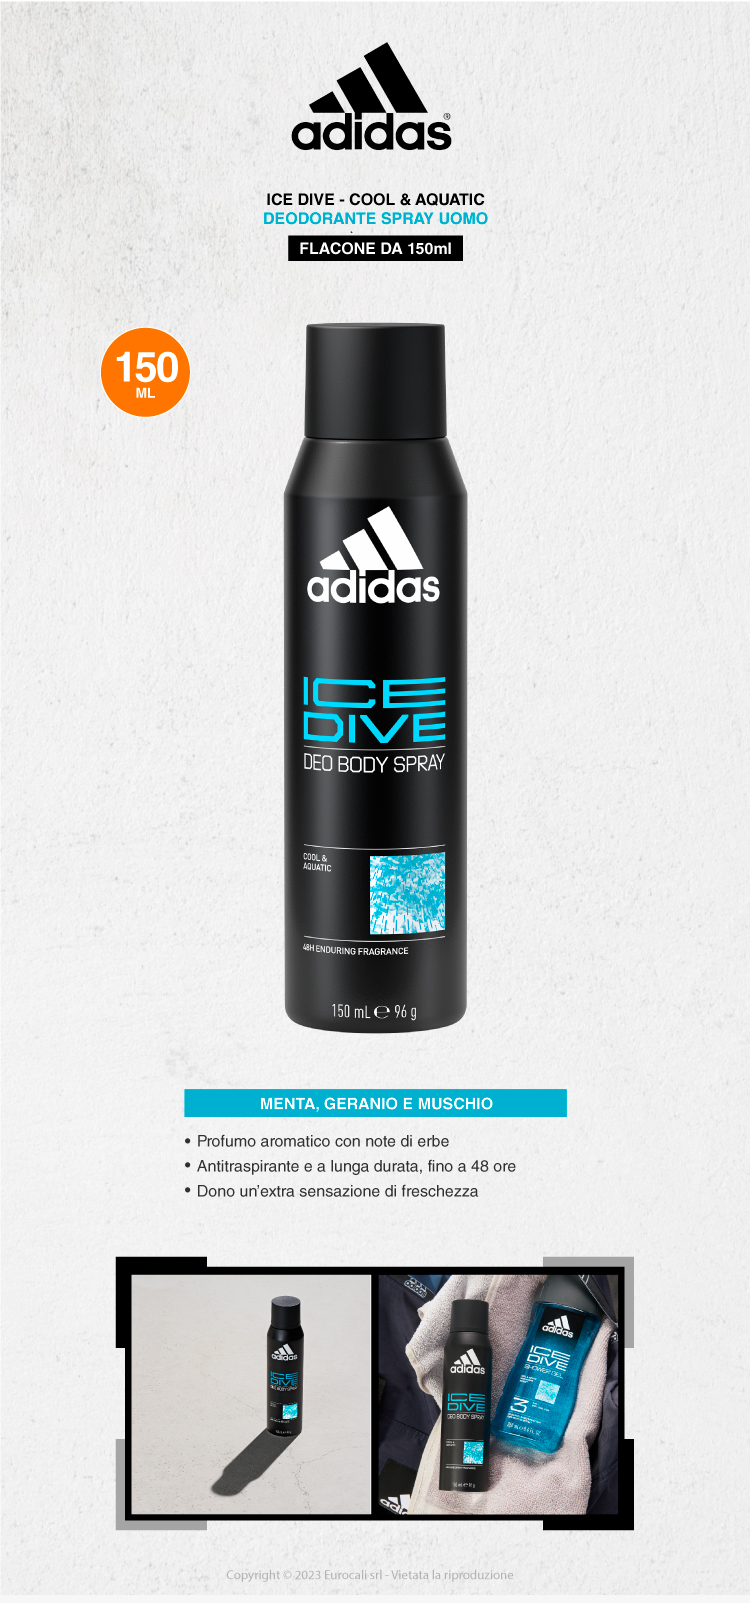 adidas ice dive cool e aquatic deodorante uomo 48h spray 150ml